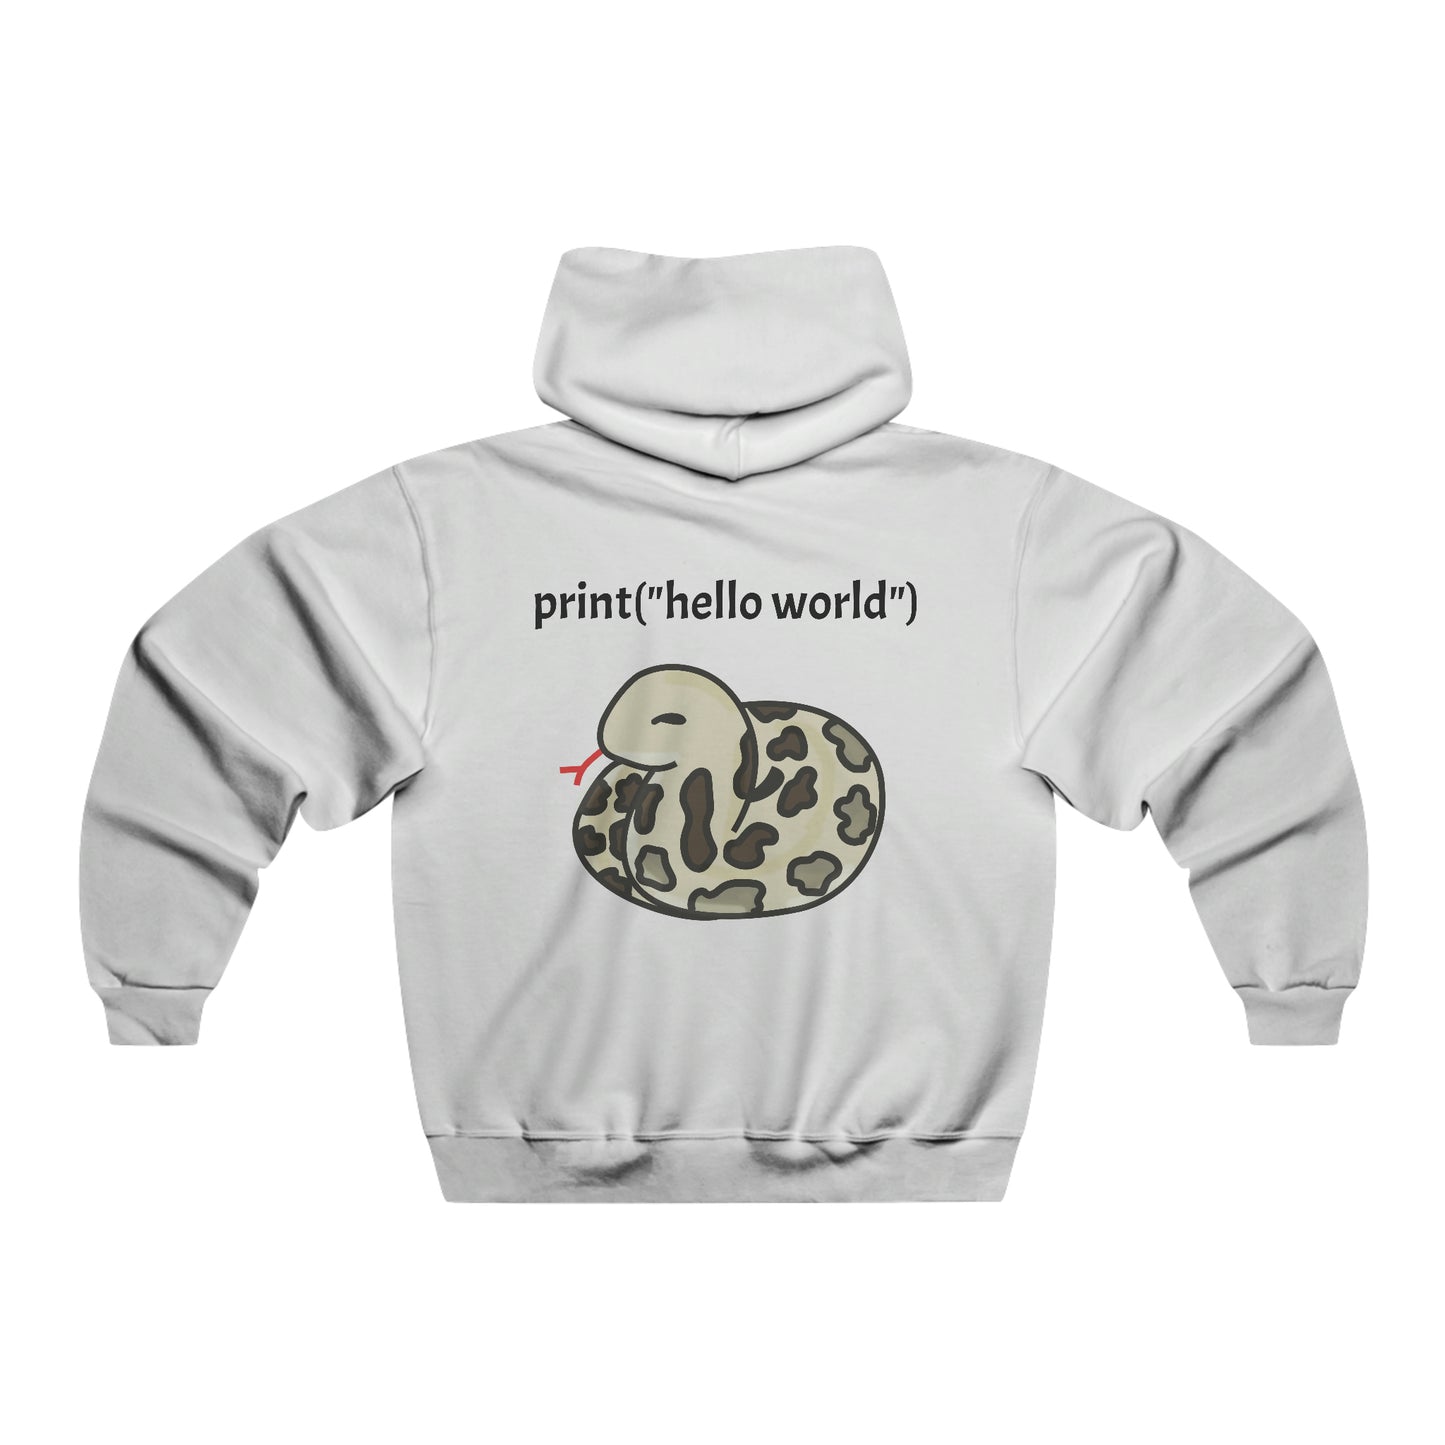 Pypi Coding Hooded Sweatshirt